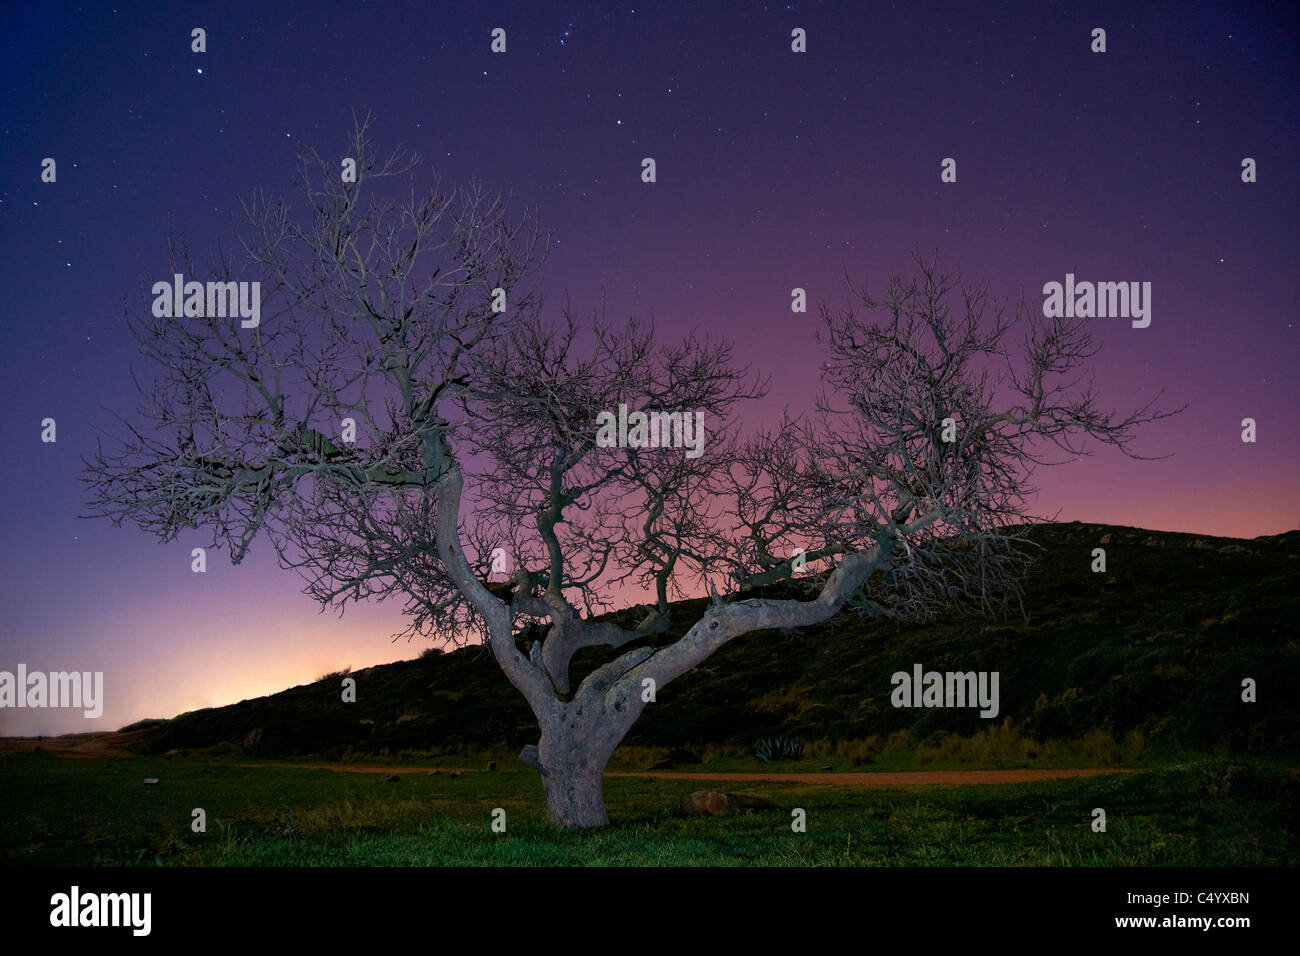 arbol cielo estrellado,tree moral night photography, environment árbol fotografía nocturna Stock Photo